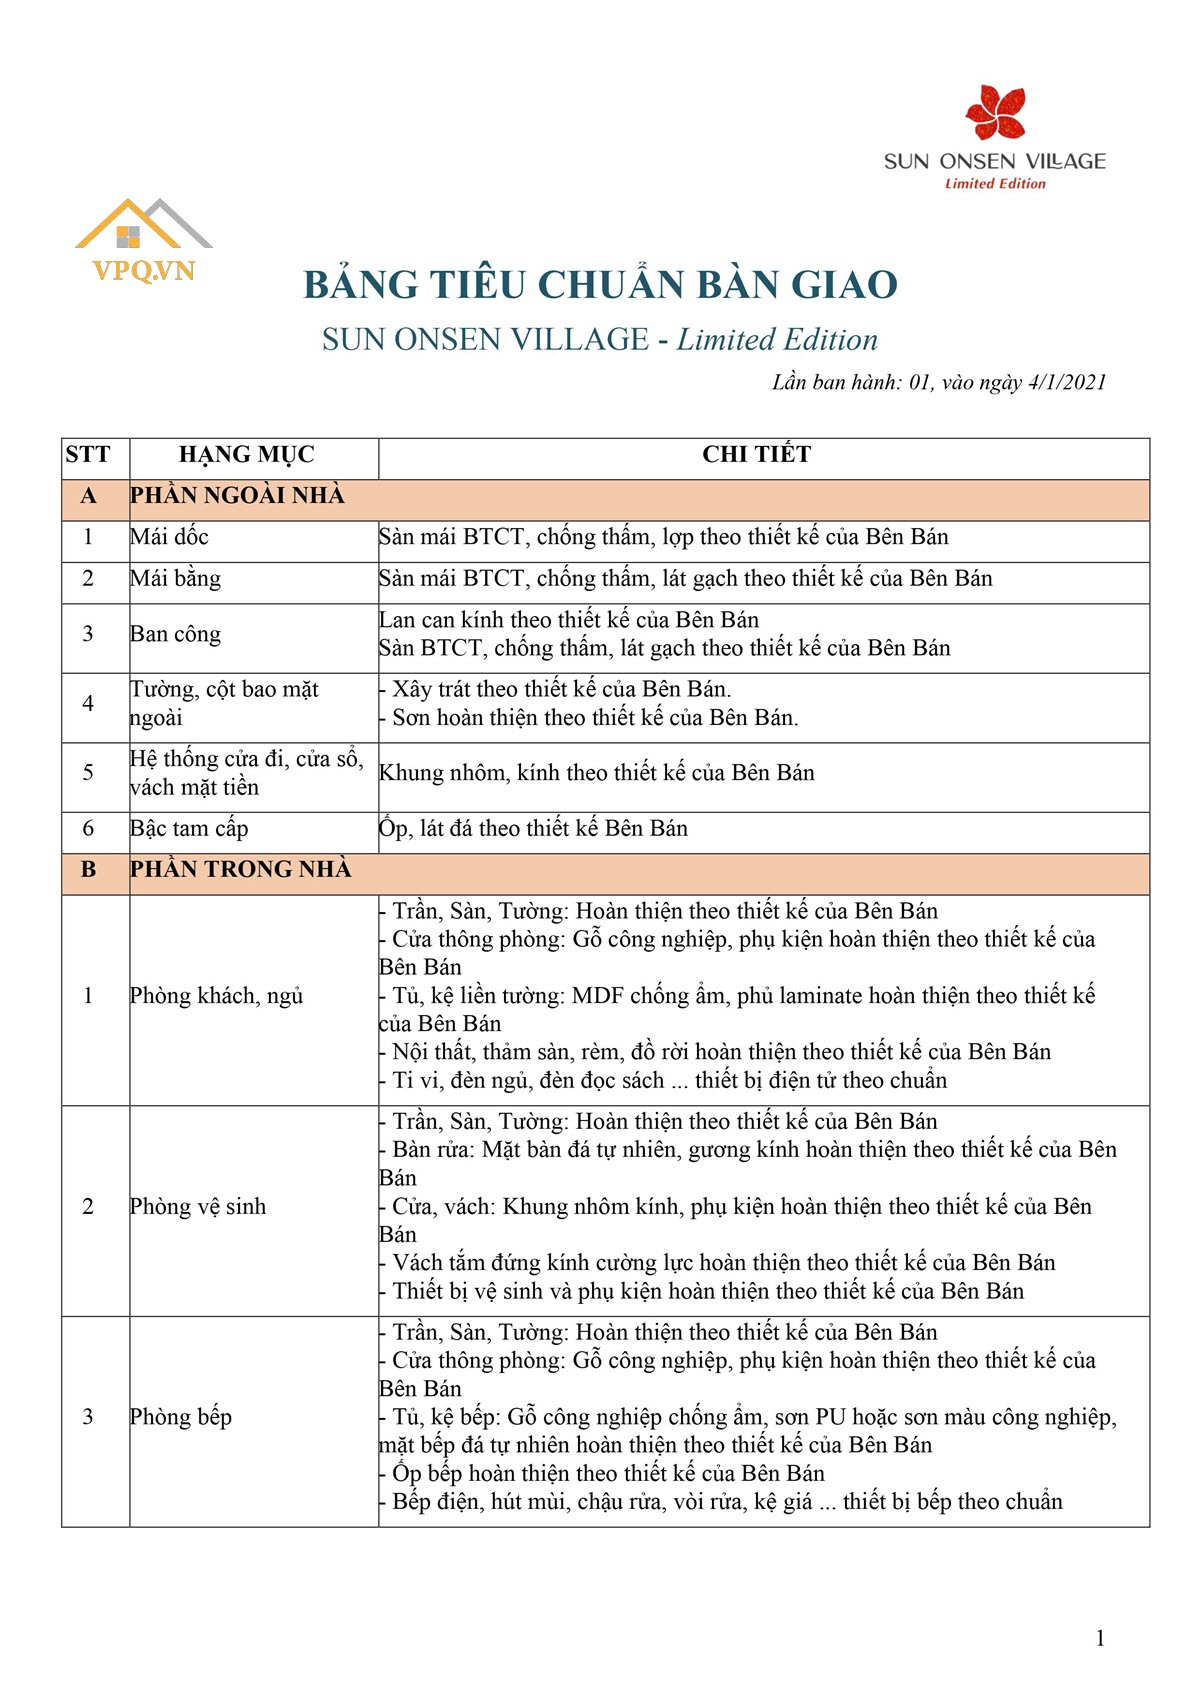 Chính sách biệt thự khoáng nóng Quang Hanh - Ảnh 1